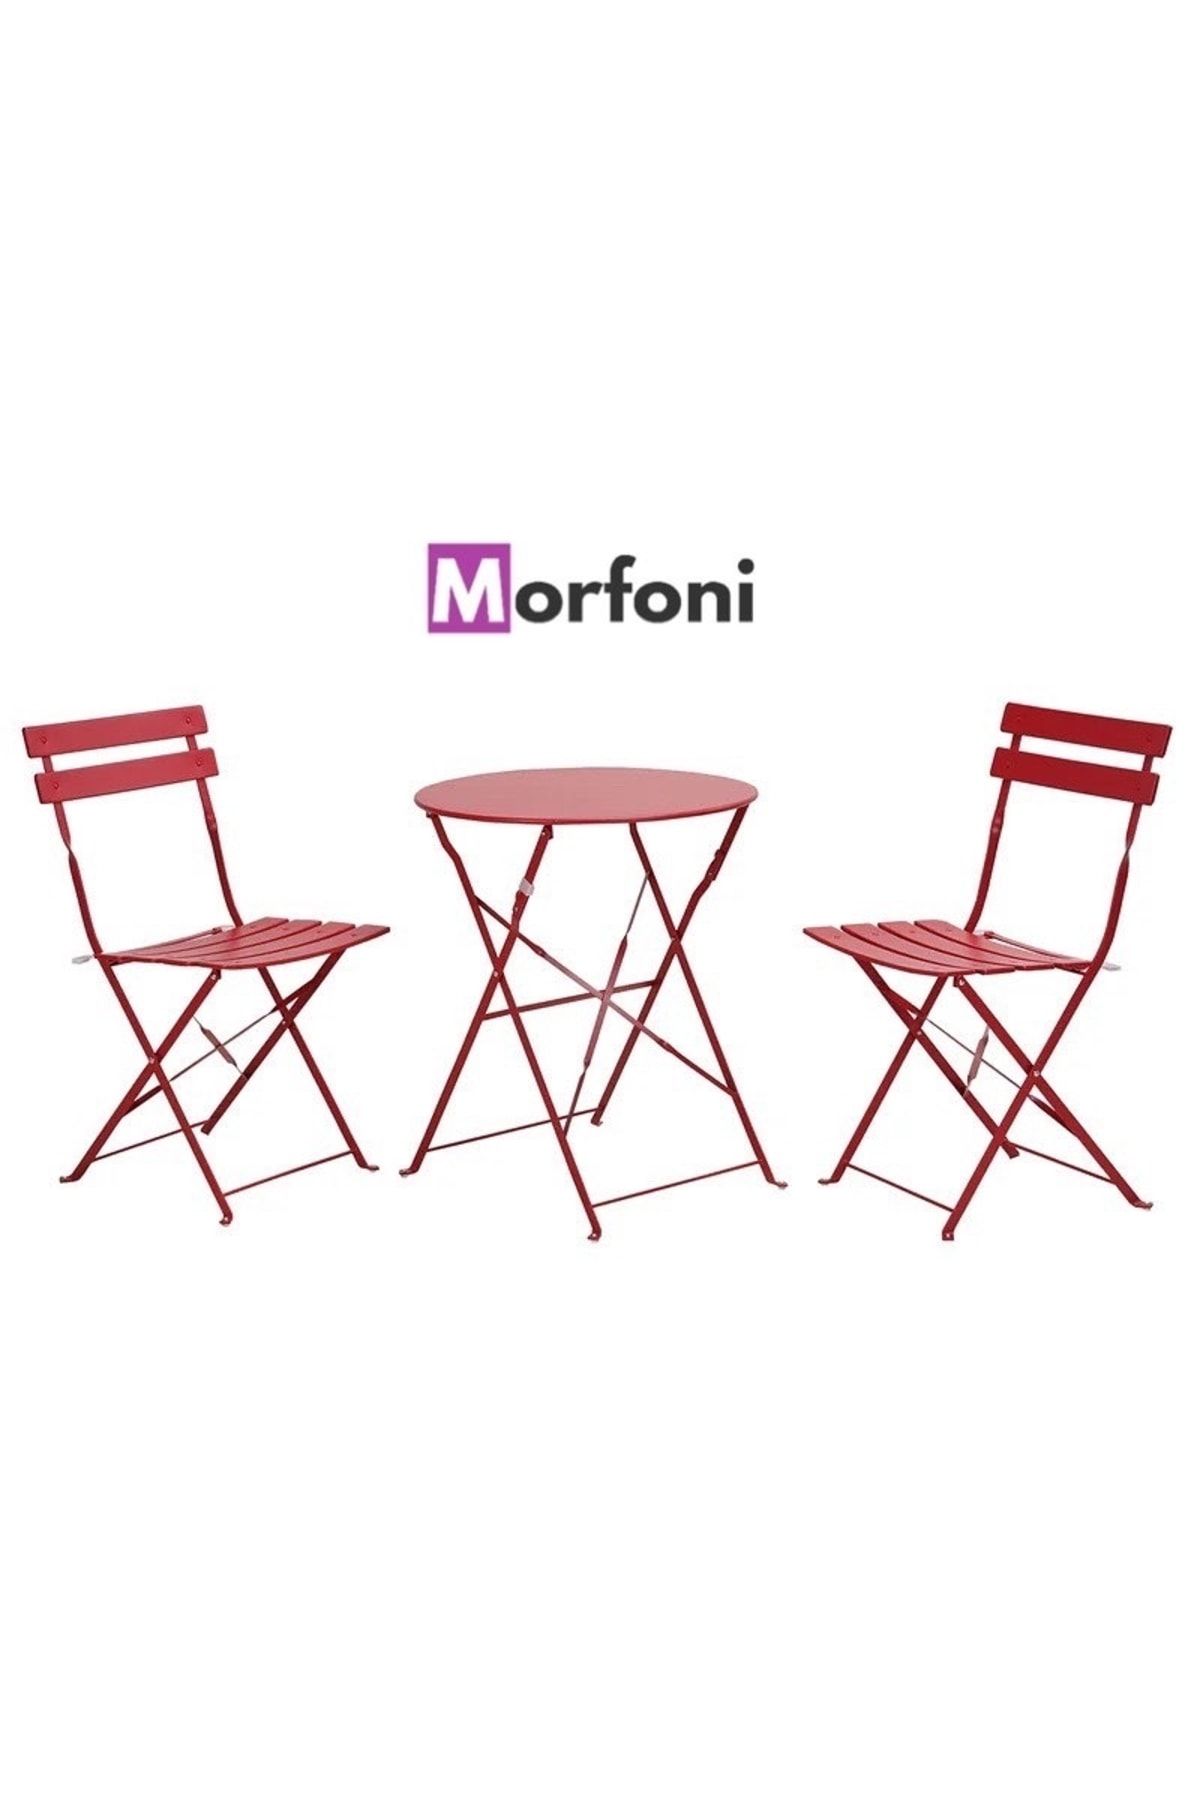 Morfoni Katlanabilir Metal Masa Ve Sandalye Takımı Balkon,bahçe,cafe Masası,bistro Masası